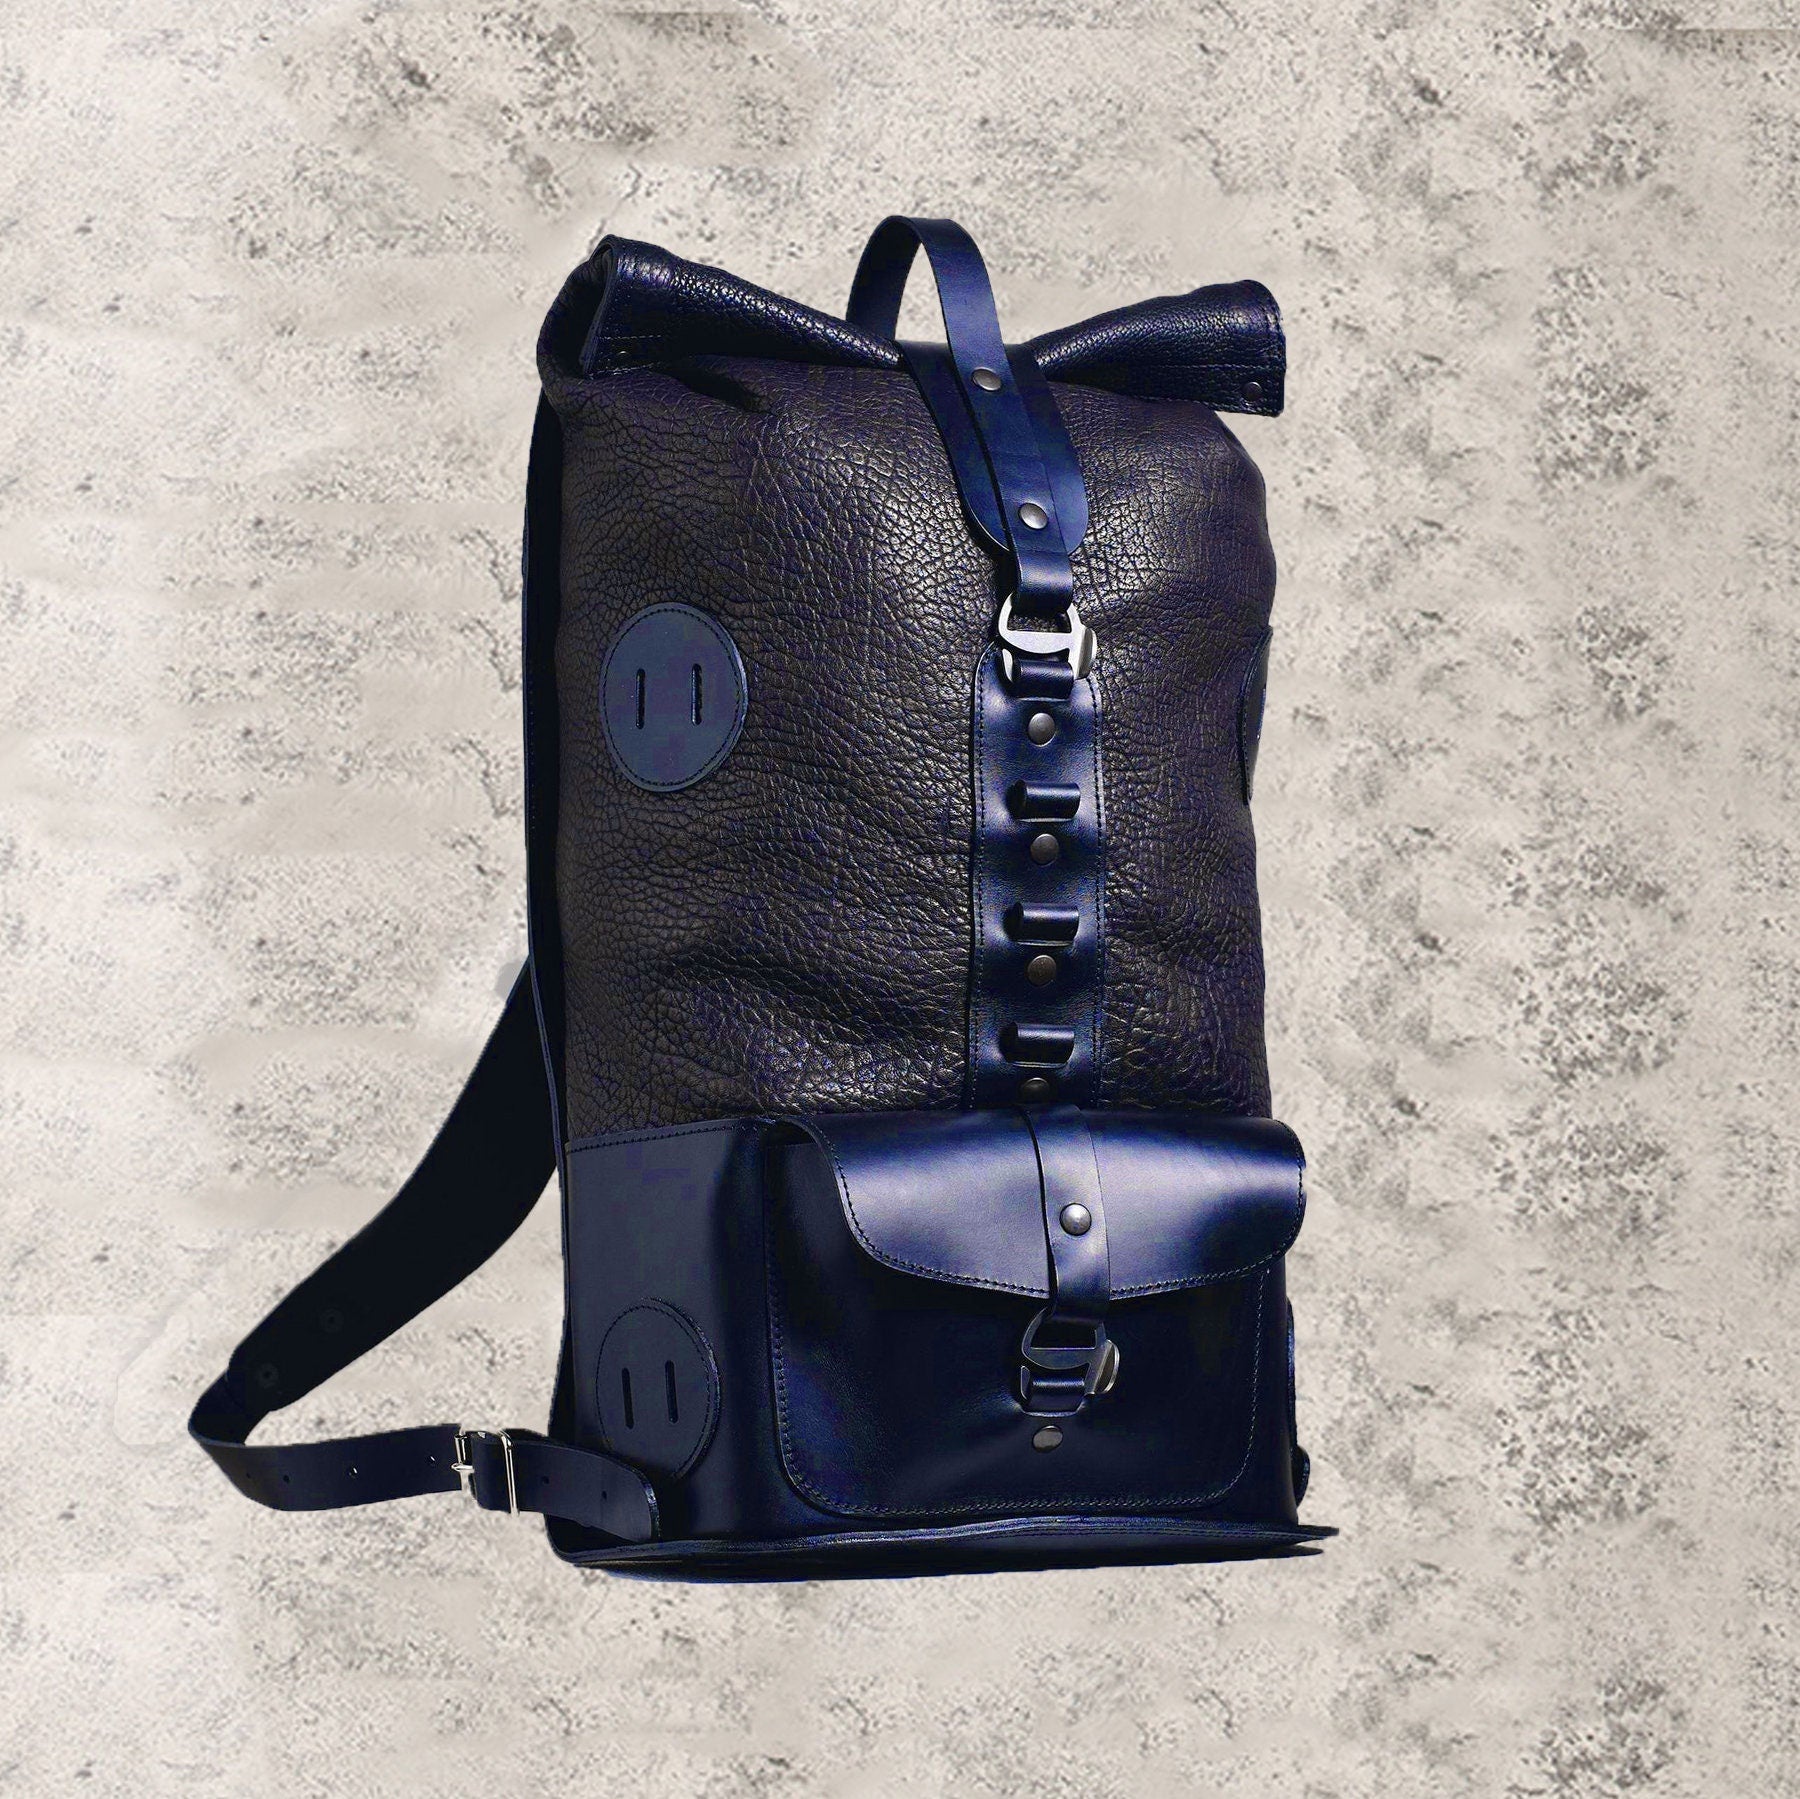 Full Leather Backpack | Hiking Backpack | Daypack |  Biker | Leather | Bushcraft Backpack | Camping Backpack | Bag | Rucksack backpack 99percenthandmade   